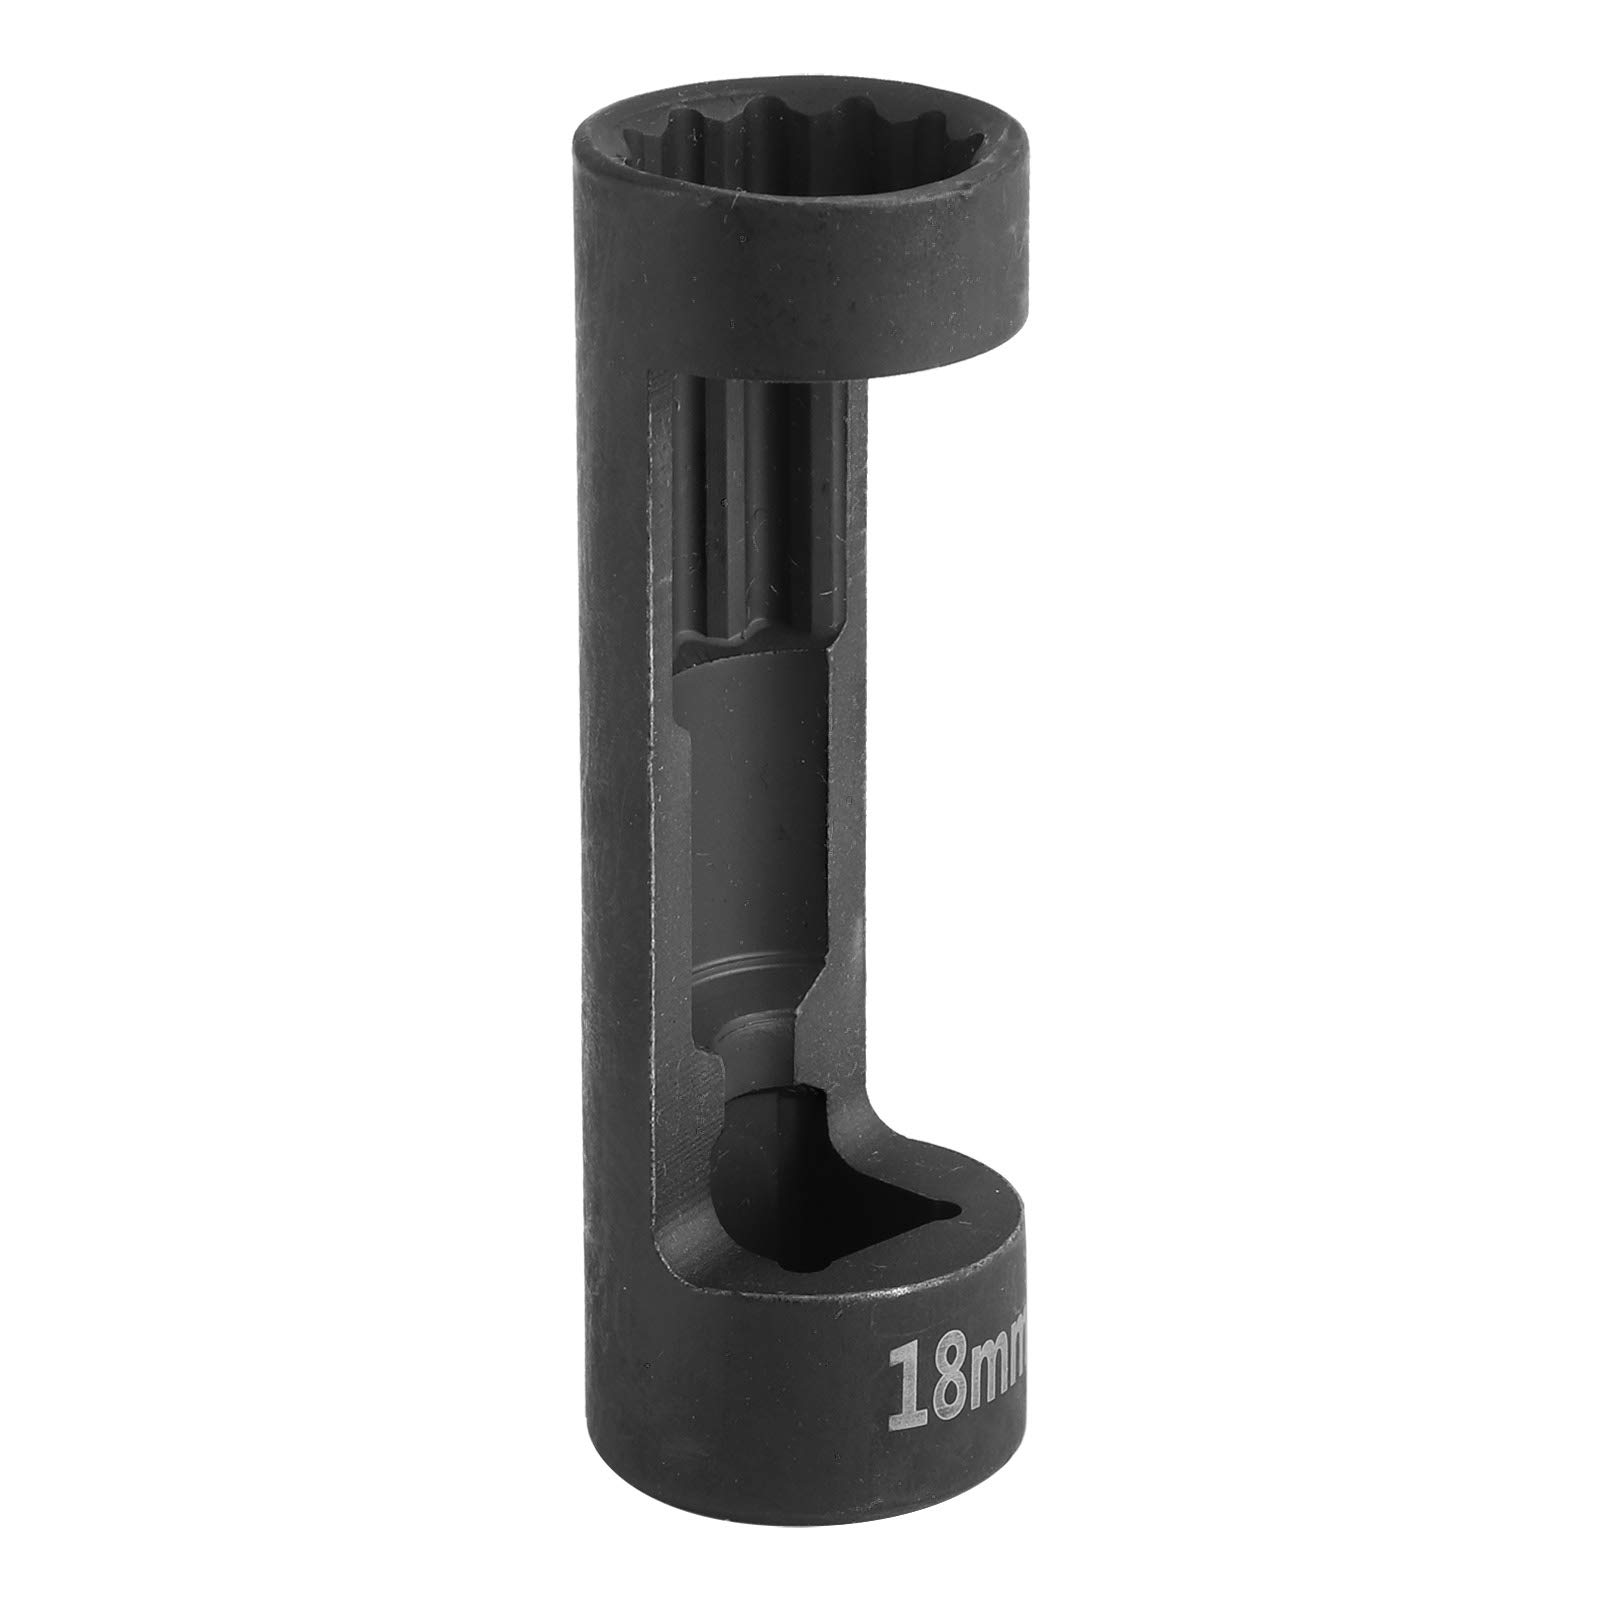 Strut Nut Socket Antirust Korrosionsschutz für Luxusautos, 18mm/12PT VM number : 3353 von Dpofirs